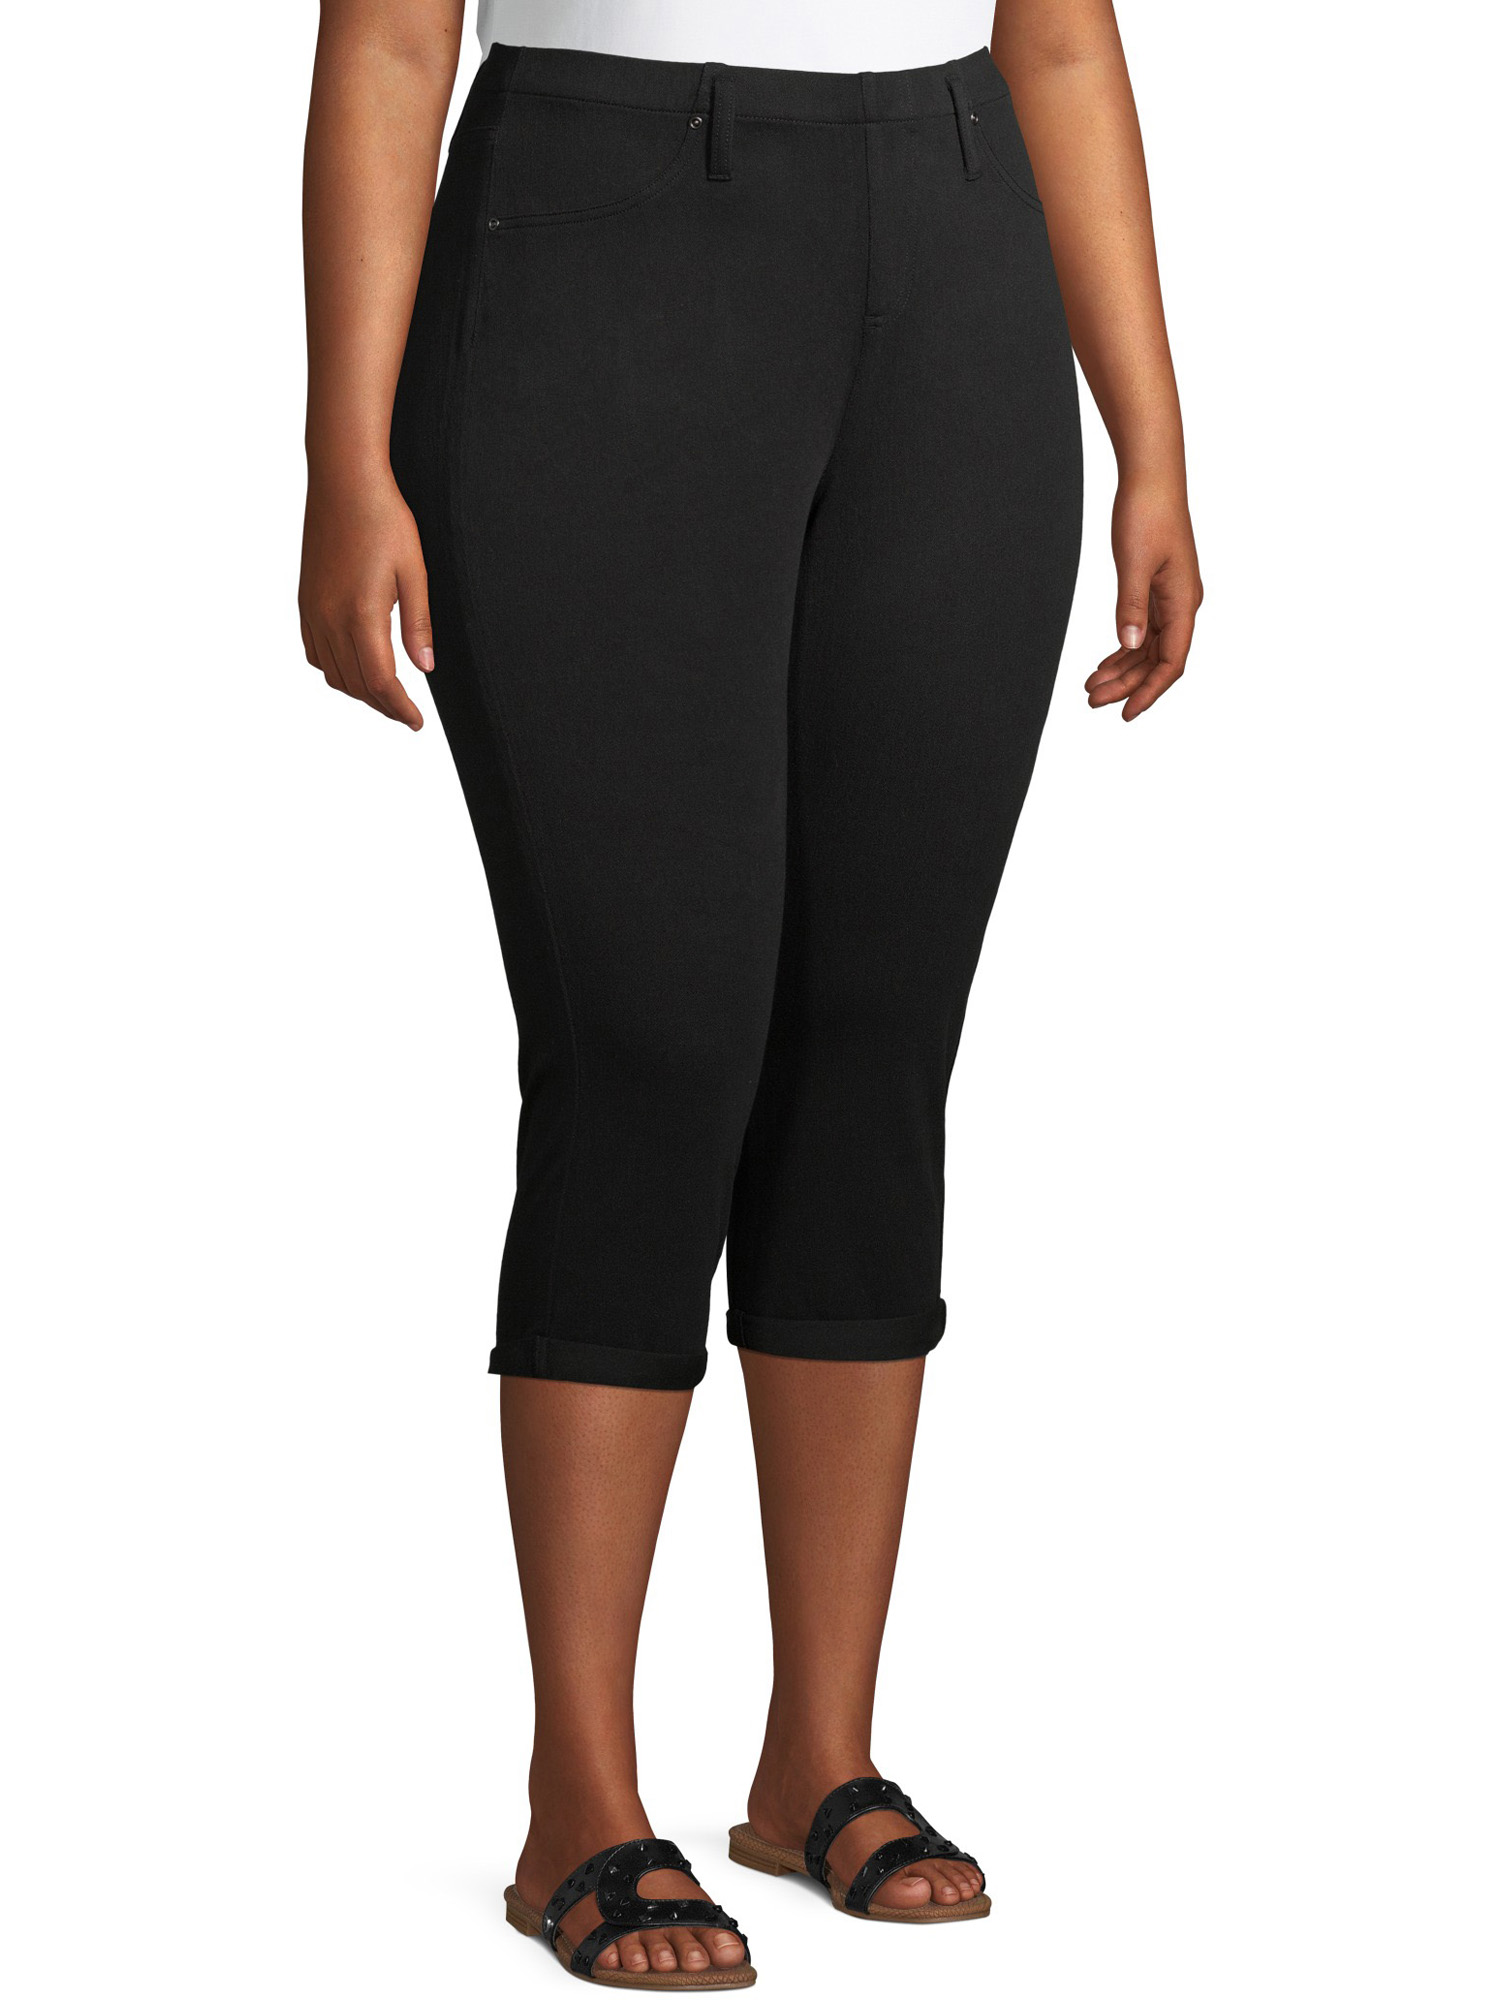 Terra & Sky Women's Plus Size Pull on Denim Capri Jeggings - image 3 of 9